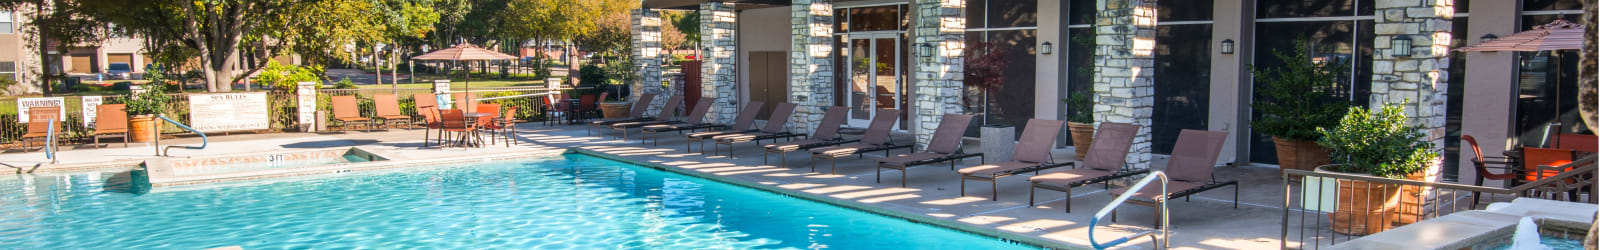 Guest suites at Villas of Preston Creek in Plano, Texas